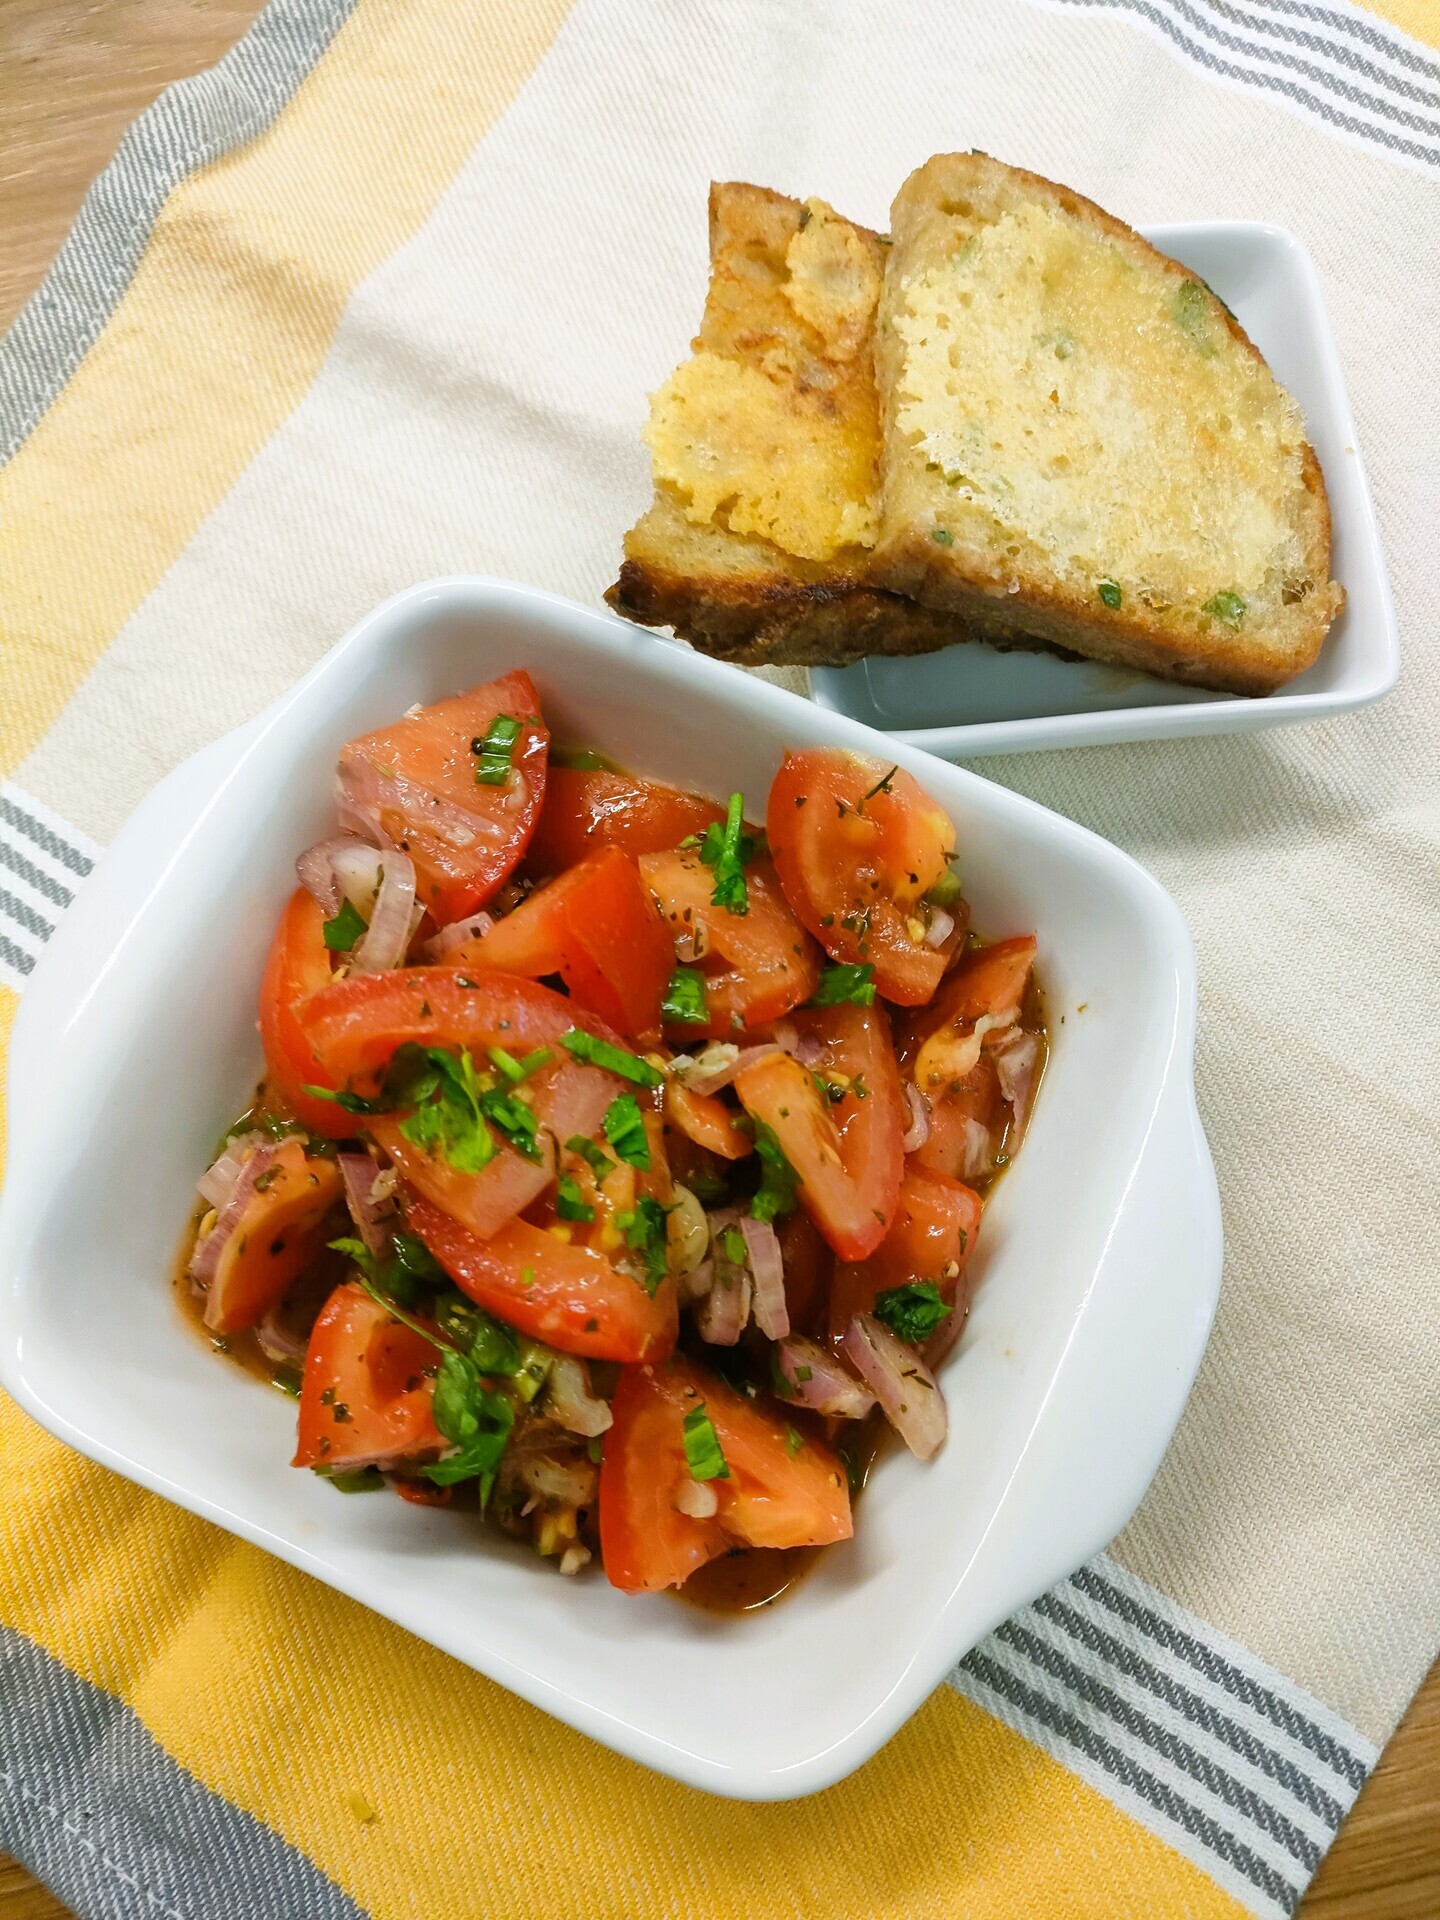 Фото к рецепту: Салат из помидоров к шашлыку “средиземноморский”